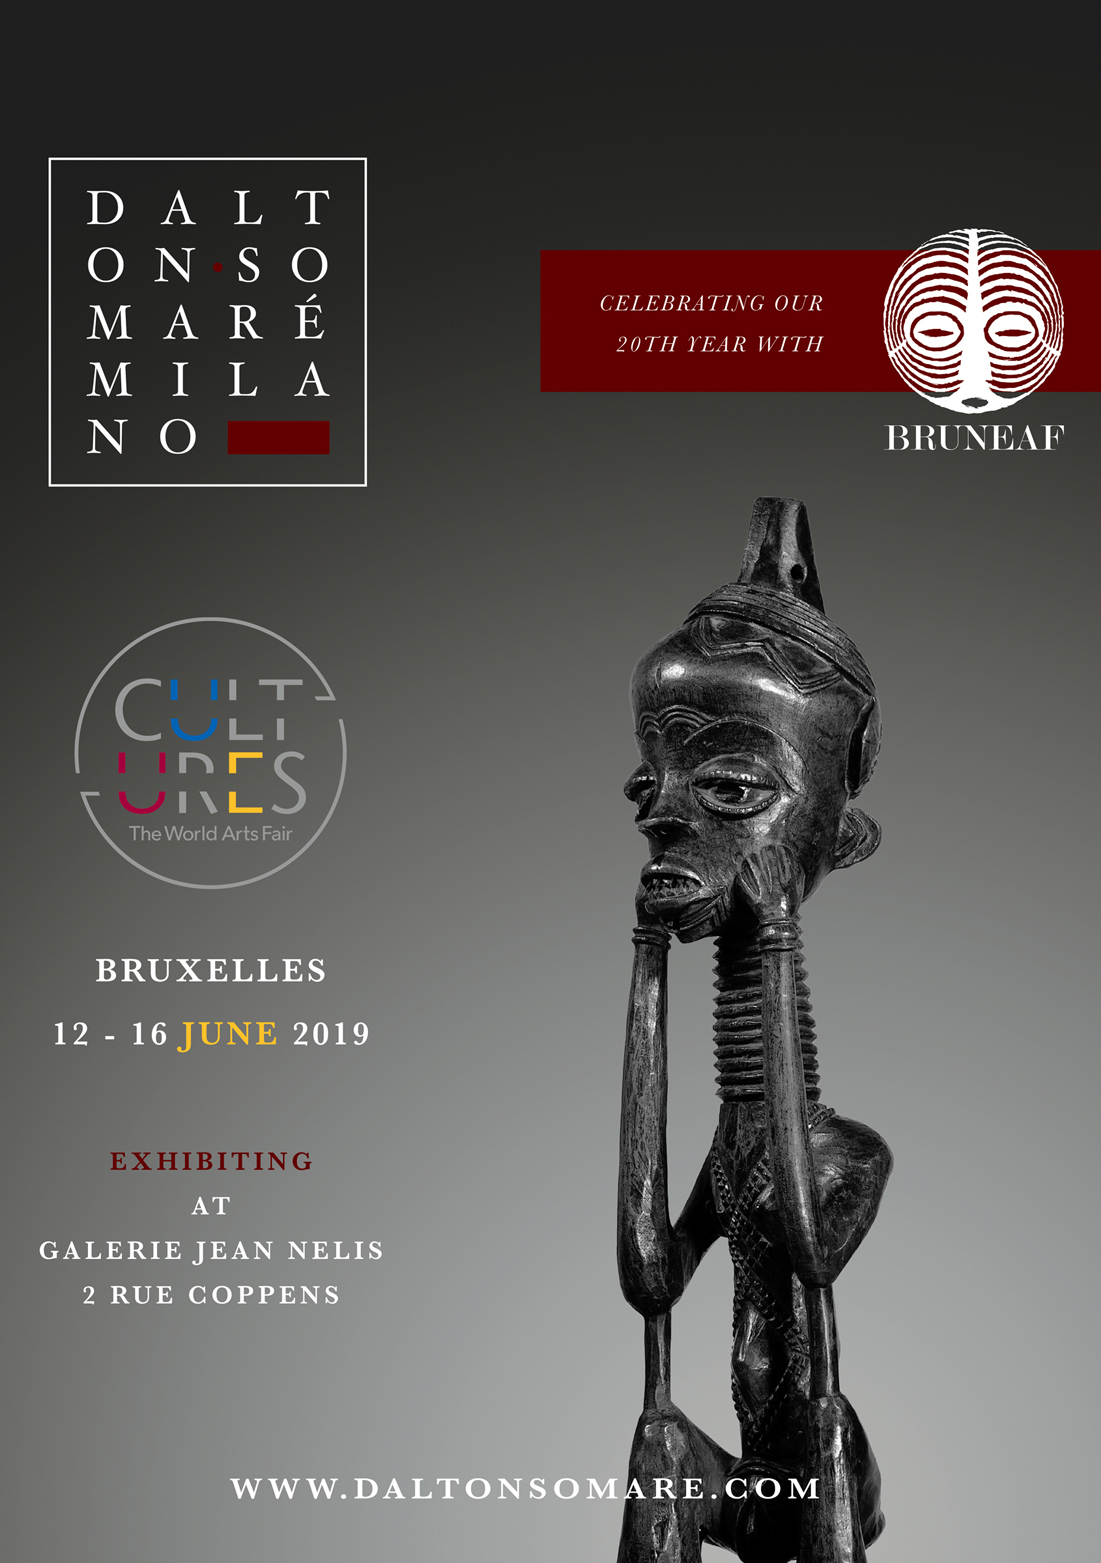 Invito Bruneaf Bruxelles Dalton Somare - Sculture in Legno Africane e Sculture Indiane Tibetane e Nepalesi